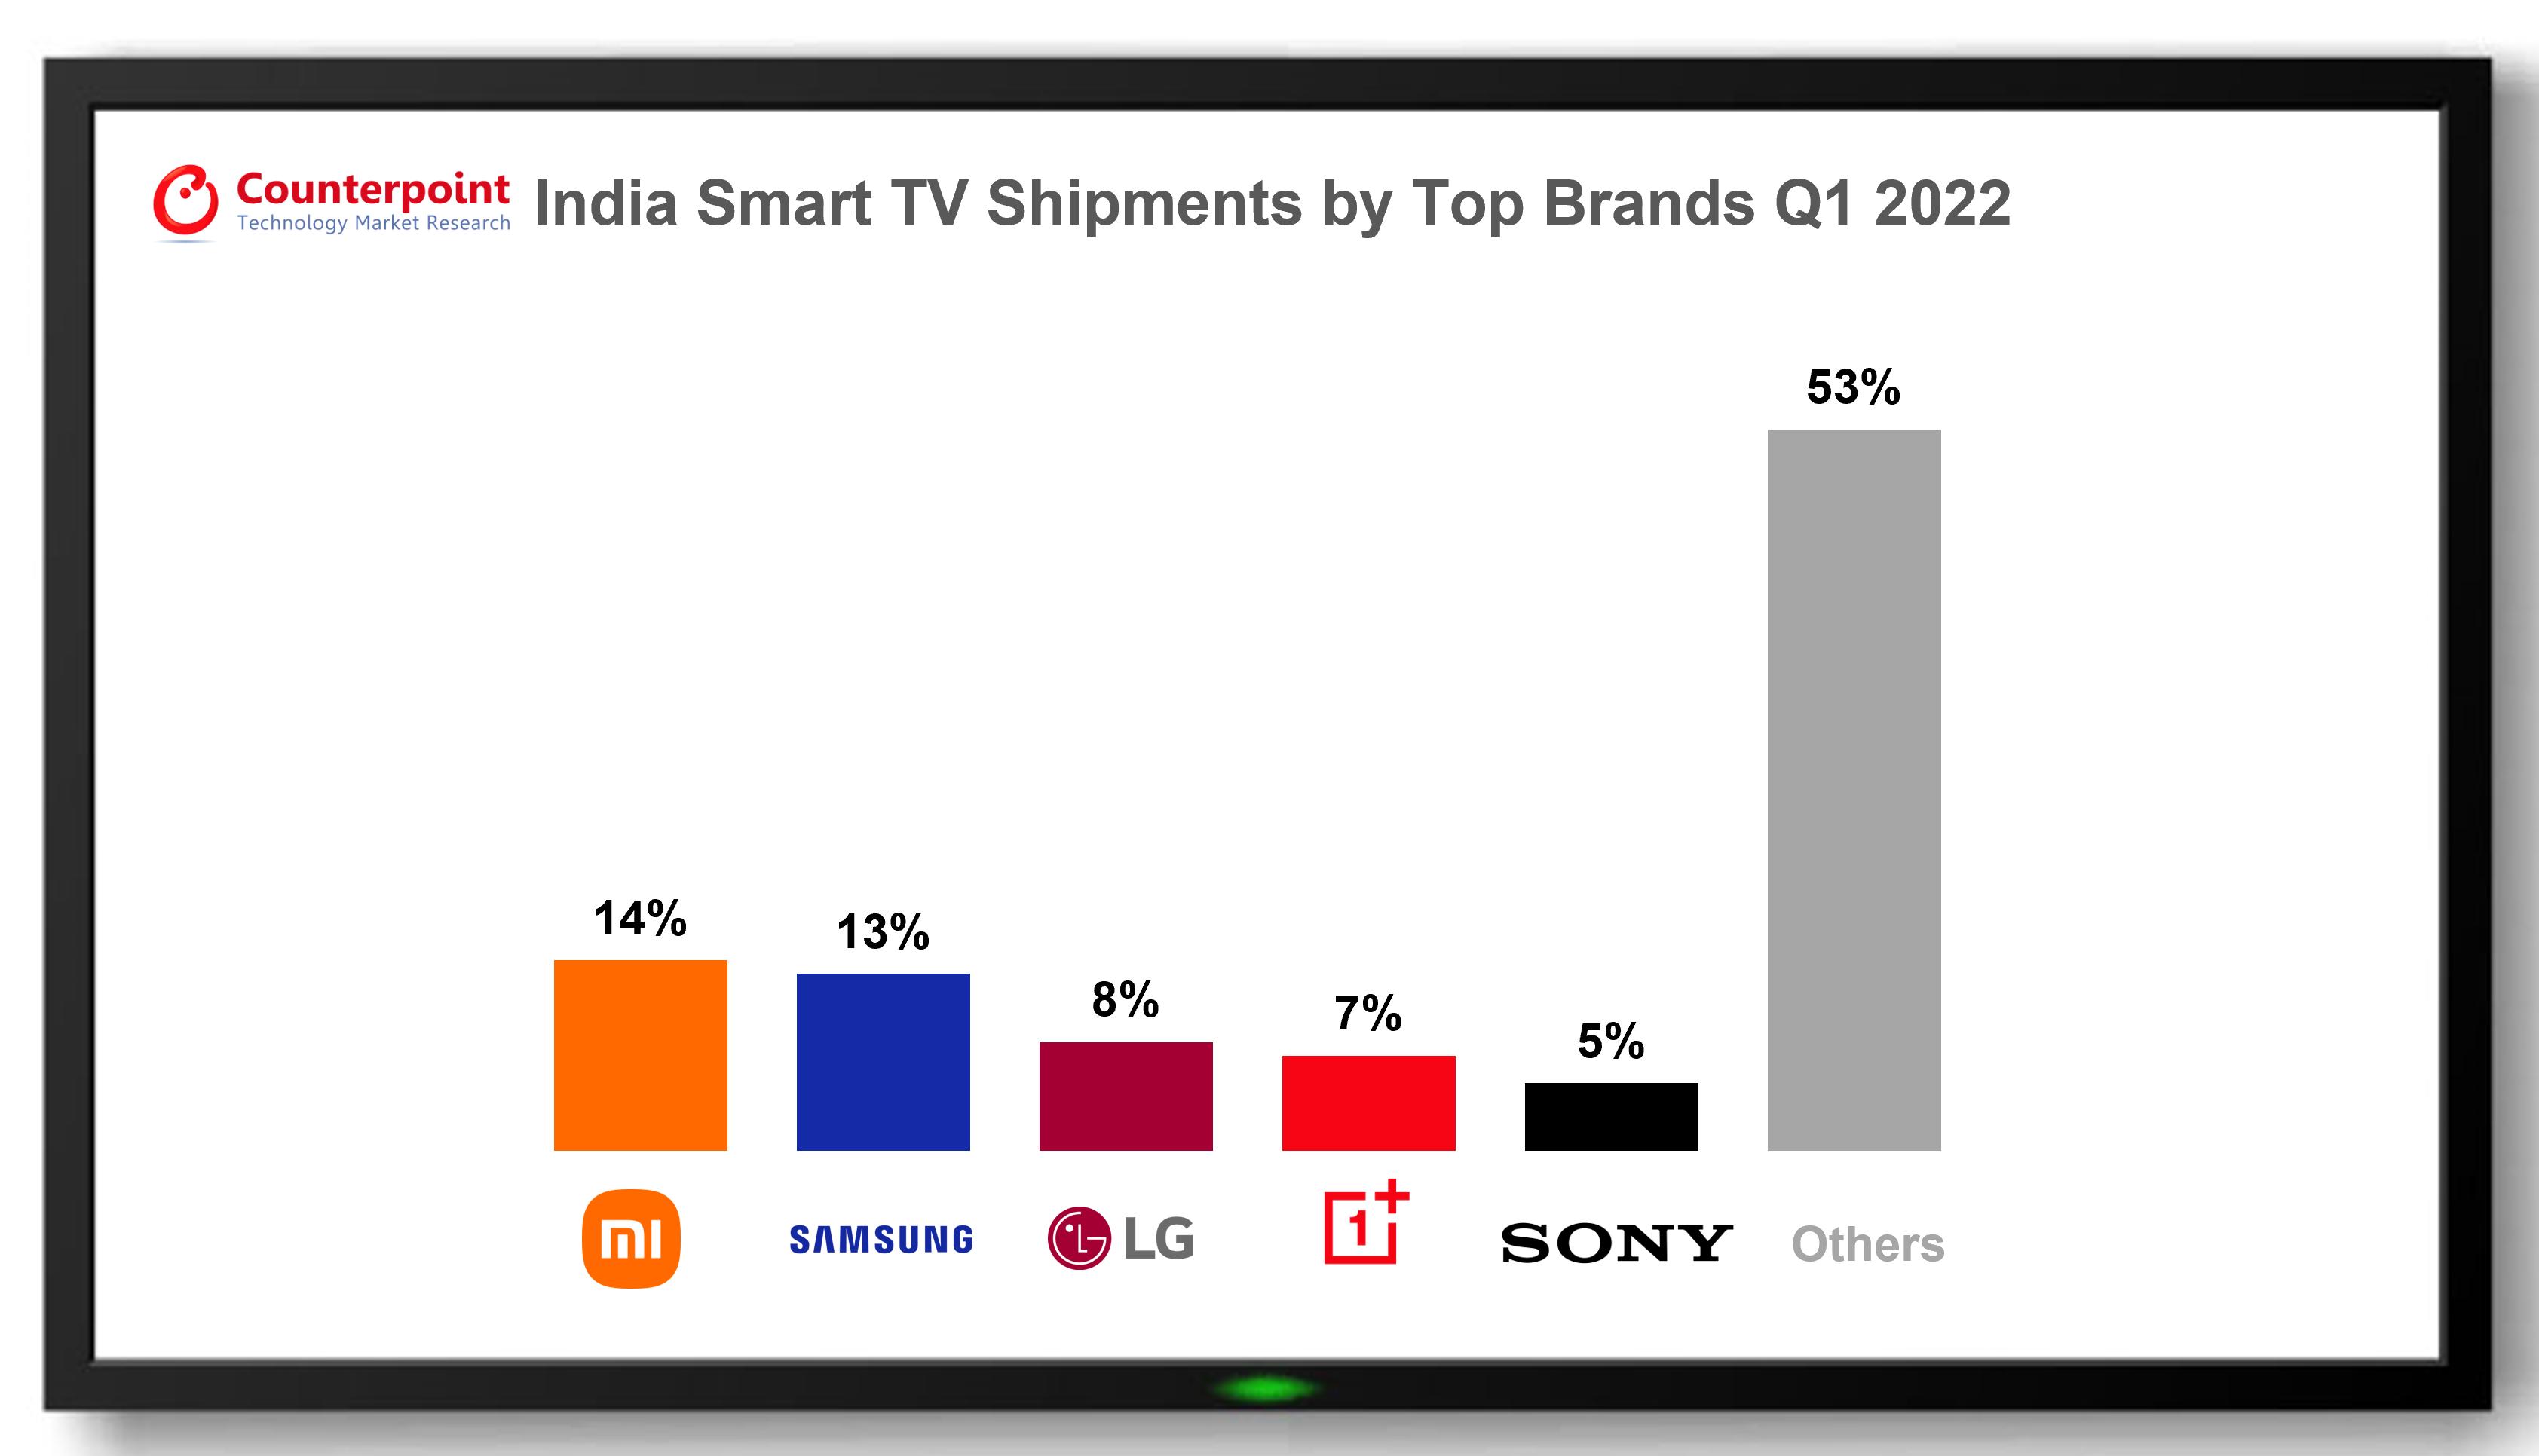 အိန္ဒိယ၏ တီဗီဈေးကွက်တွင် Smart TV ရှယ်ယာသည် 2022 ခုနှစ် Q1 တွင် 89% စံချိန်တင်ခဲ့သည်။